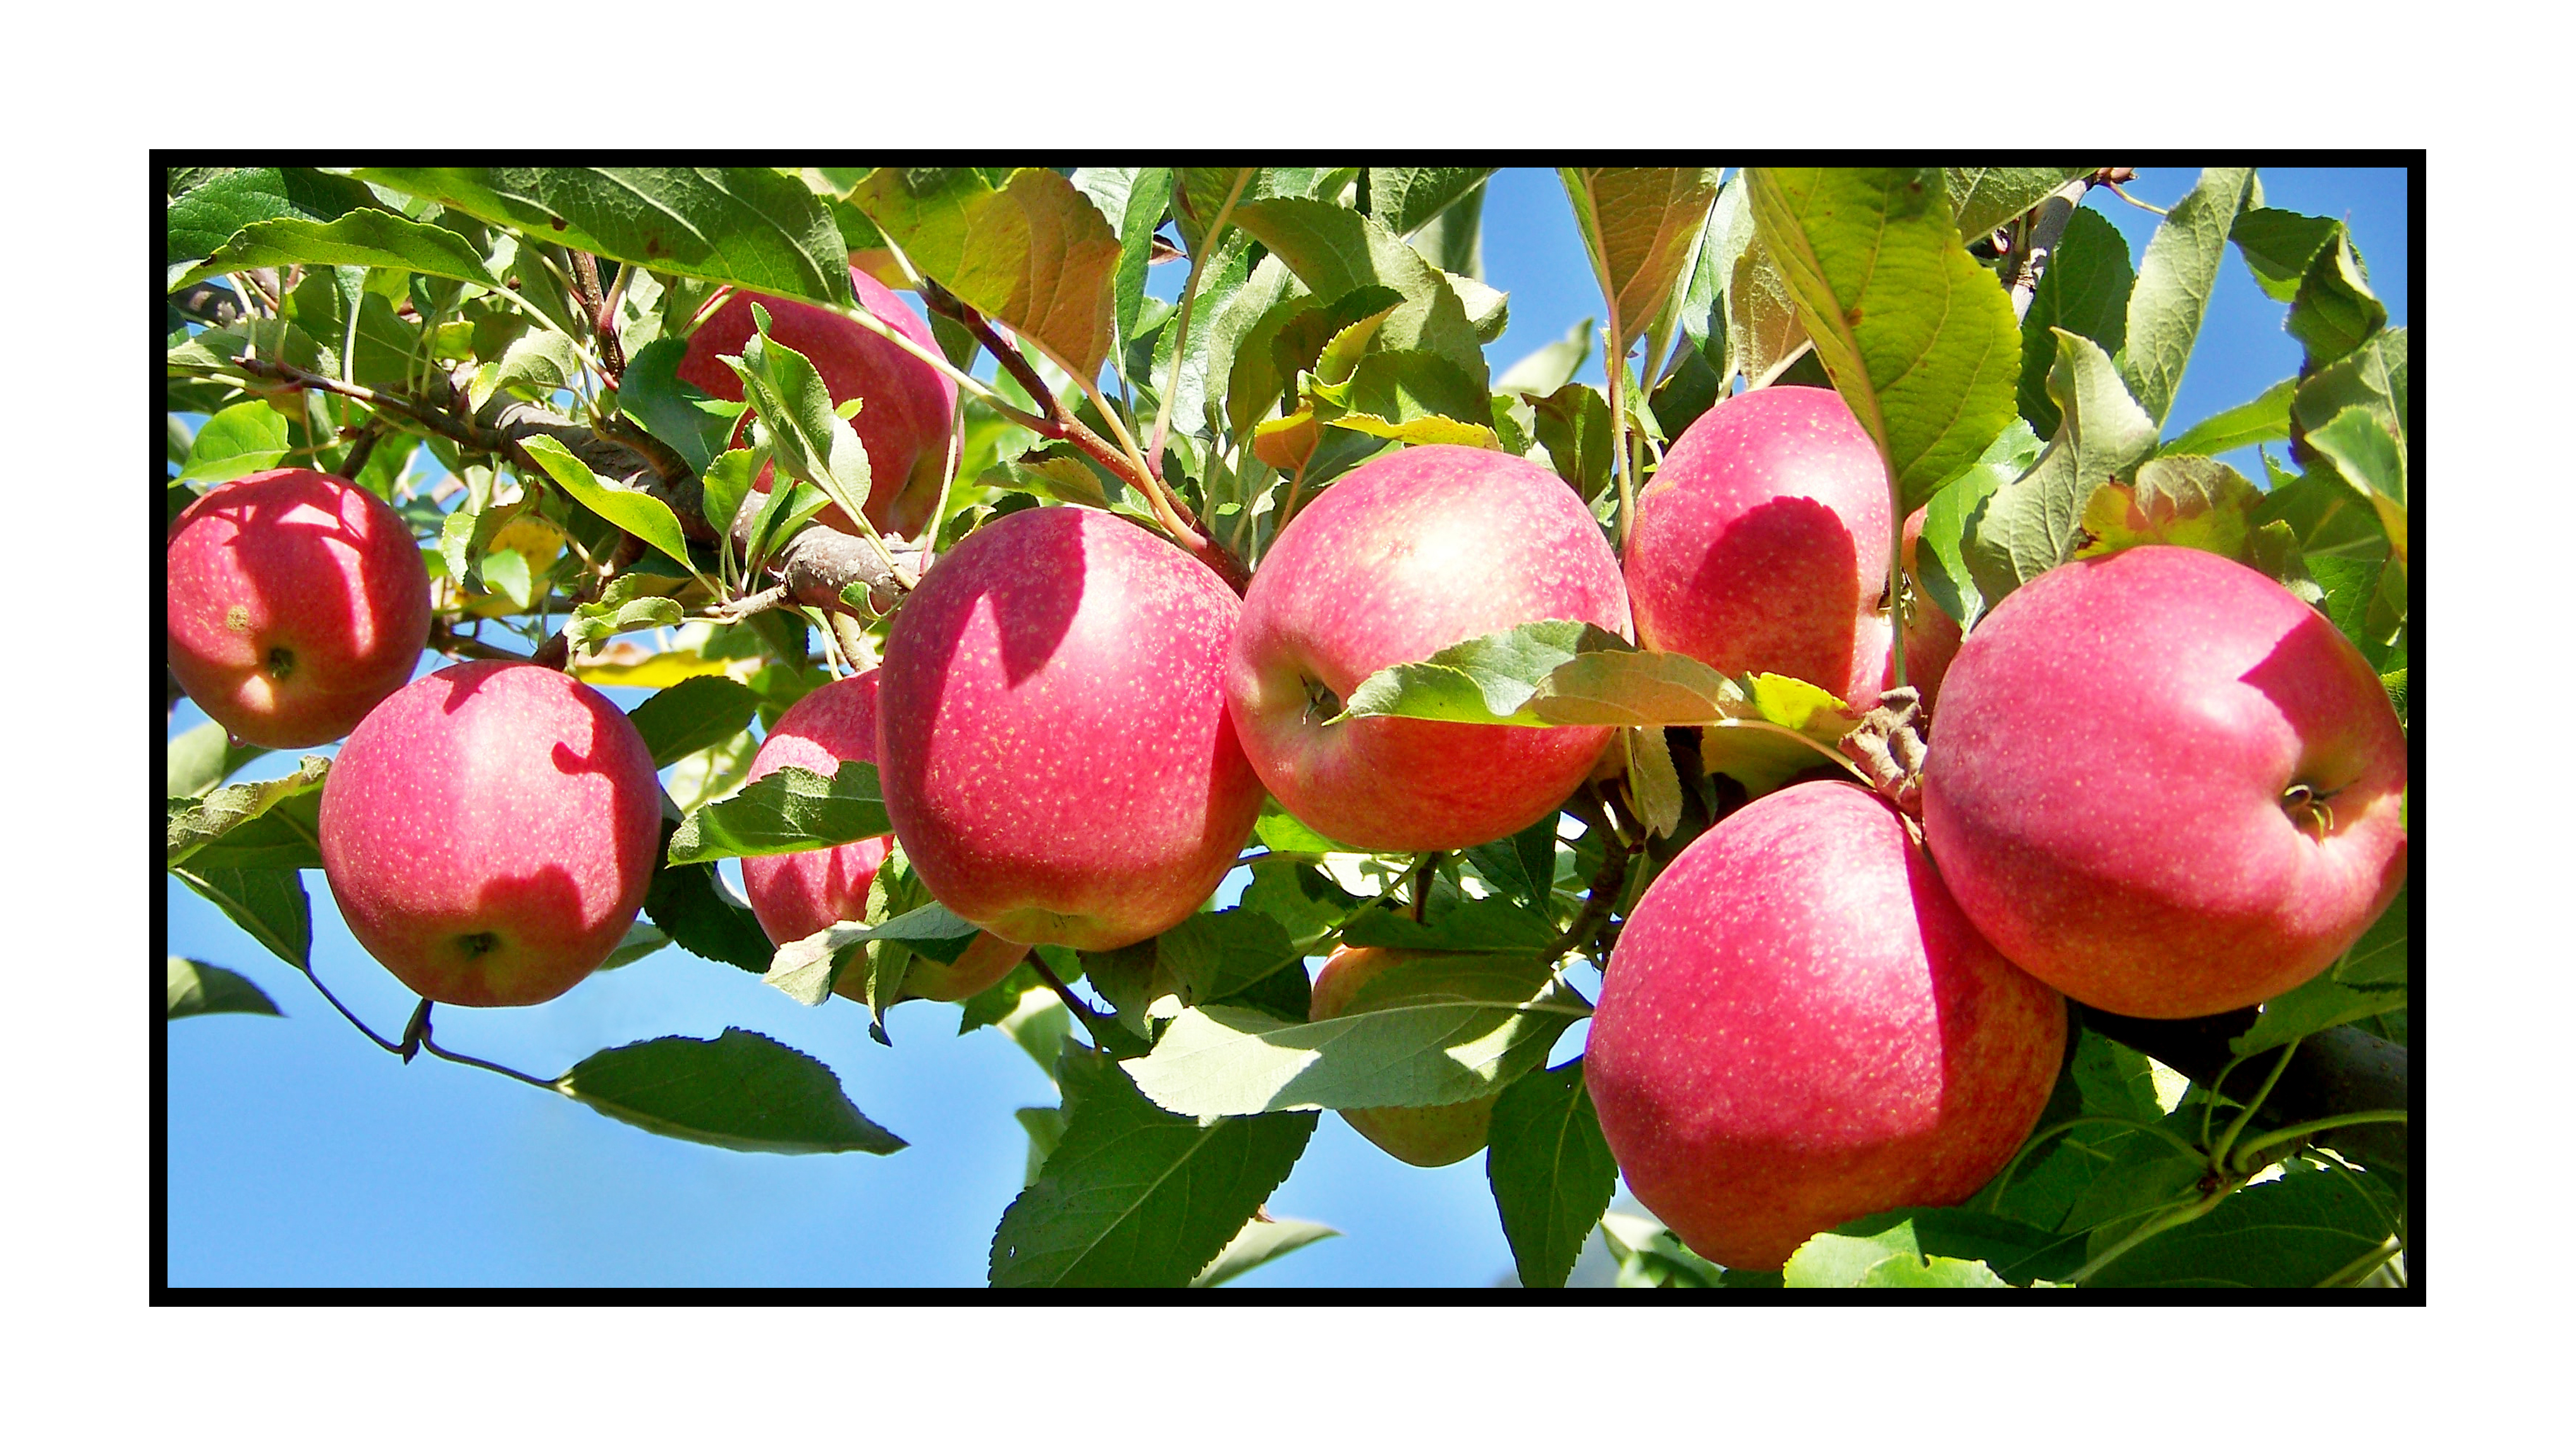 Pommes bio- locales- arboriculteur- ferme-magasin de producteurs - Gilly sur Isère / Albertville- savoie - terroir